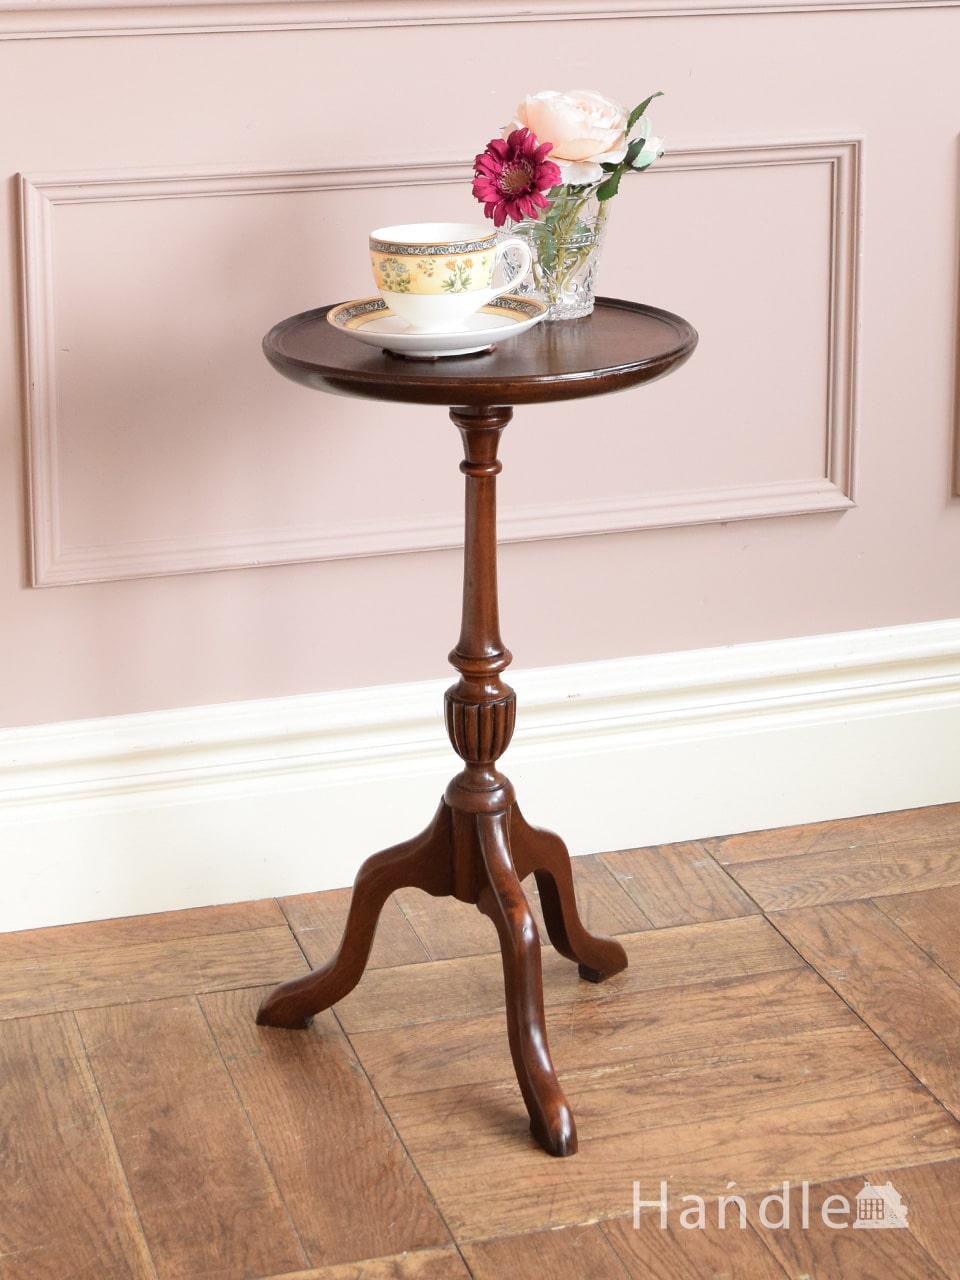 英国アンティークのおしゃれなテーブル、気軽に使えるマホガニー材のワインテーブル (h-100-f)